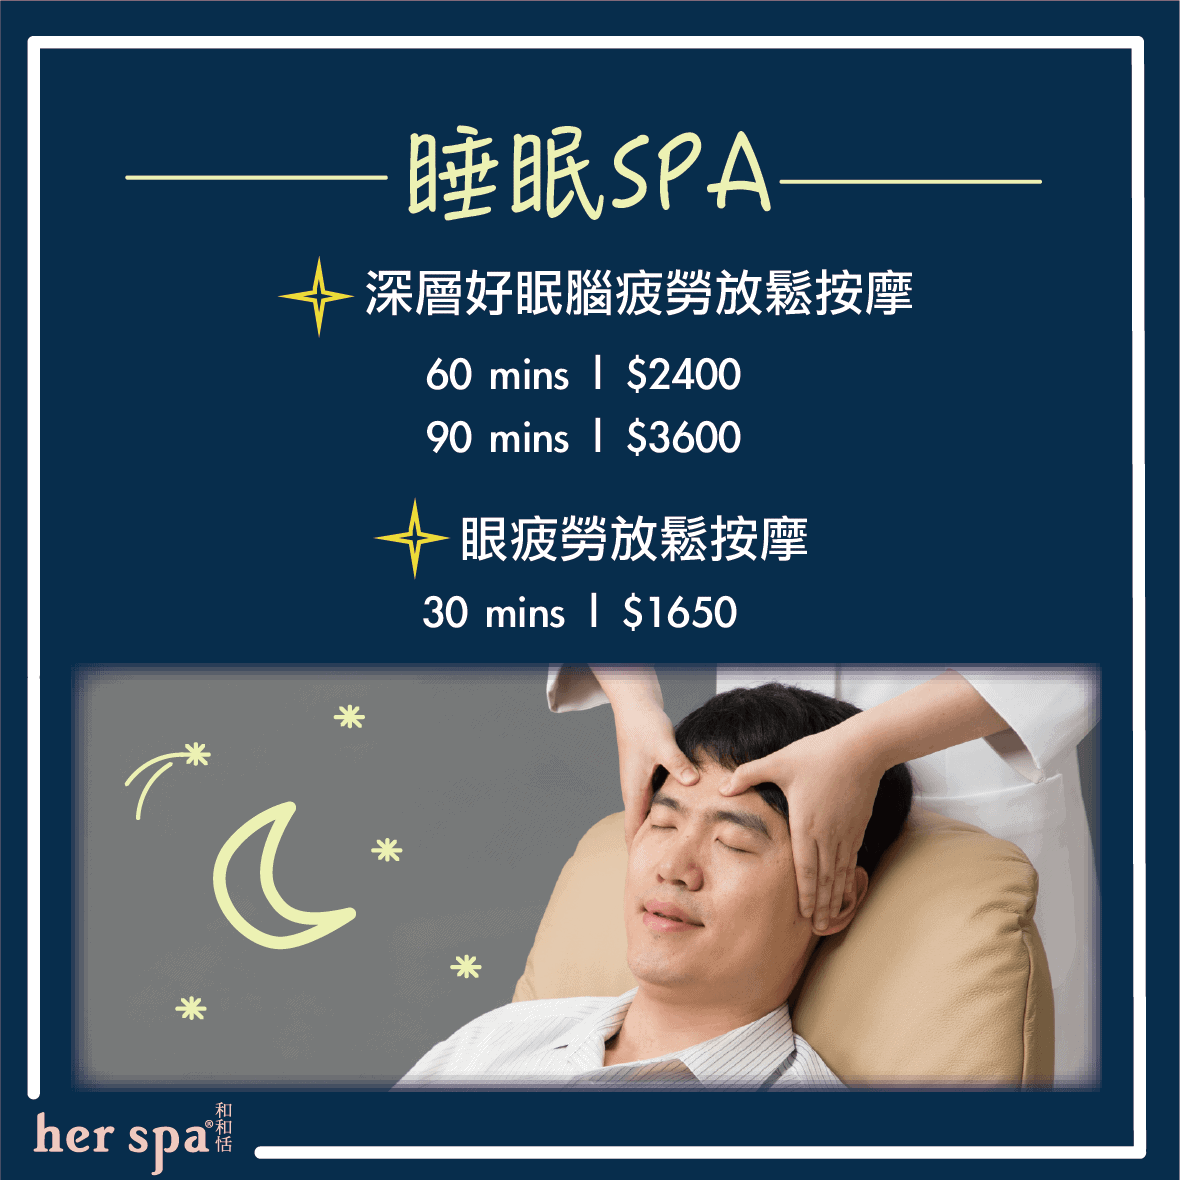 失眠放鬆 睡前焦慮 睡前放鬆運動 提升睡眠品質